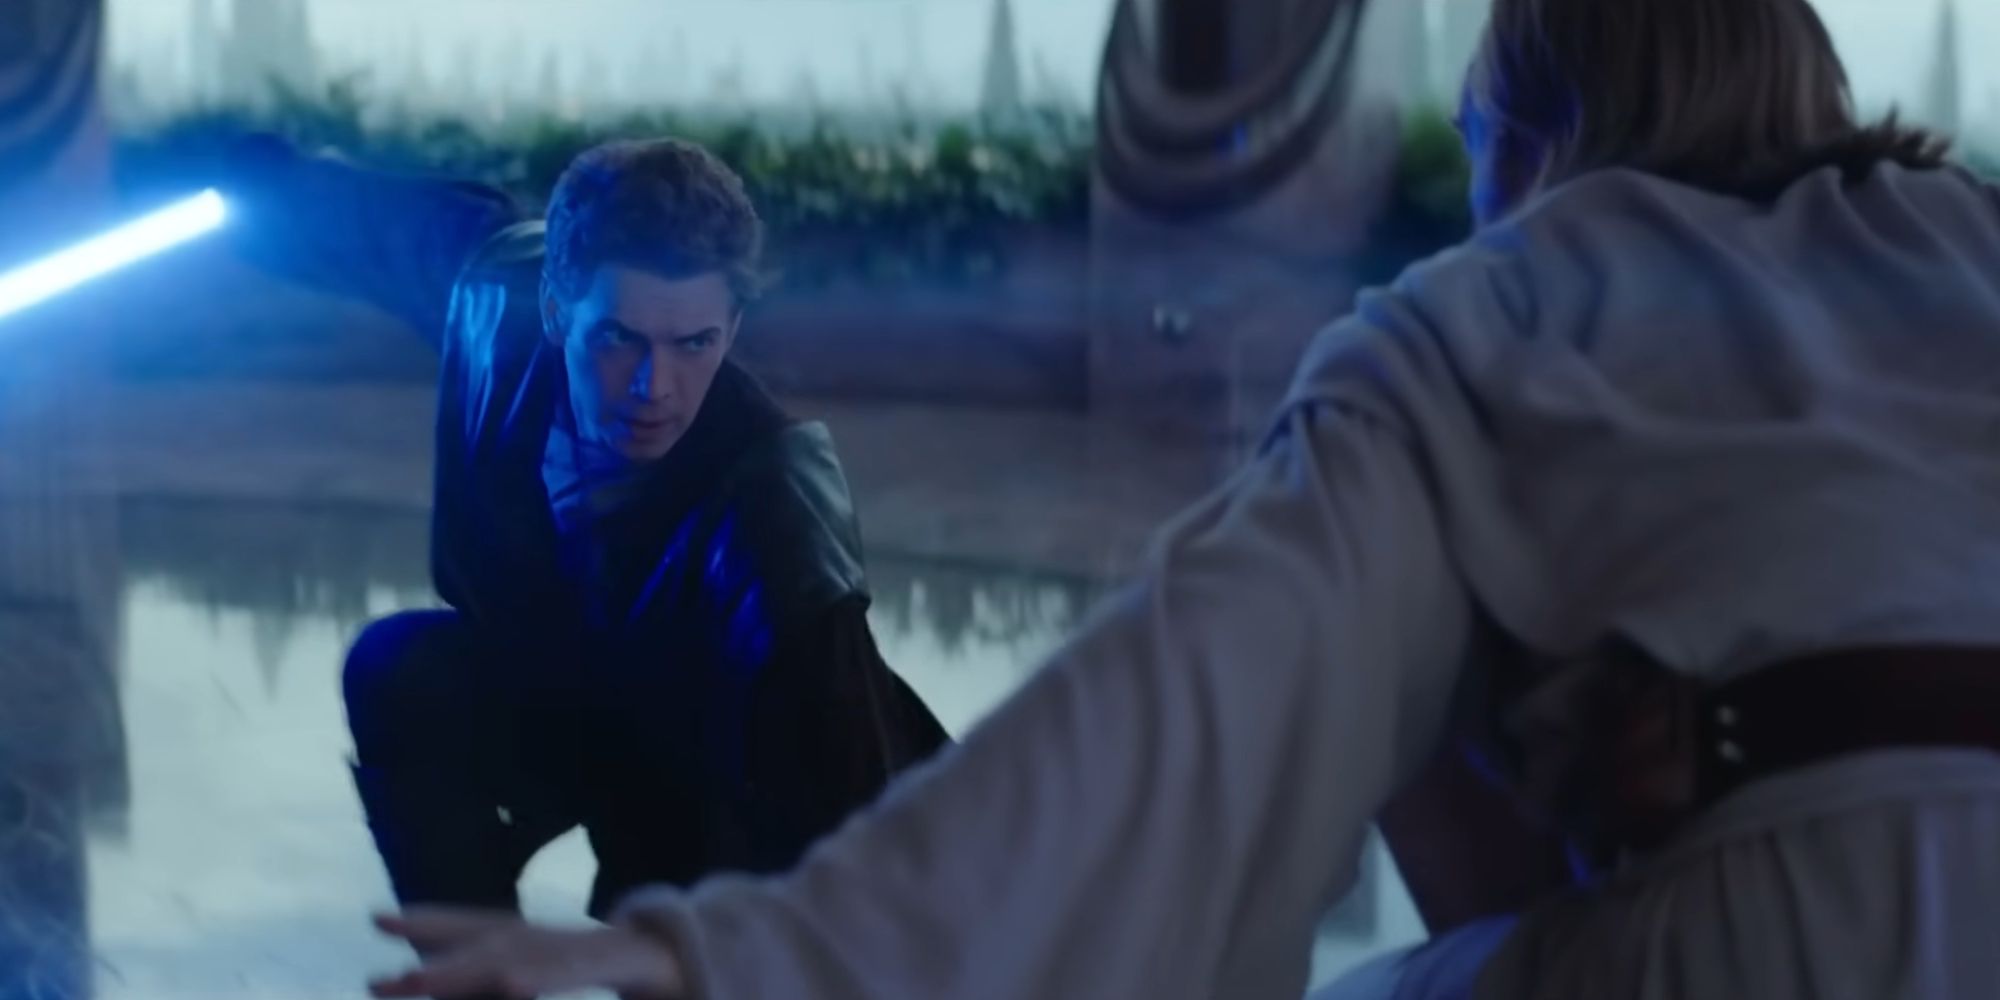 Anakin and Obi-Wan sparring in Part V of the Obi-Wan Kenobi series